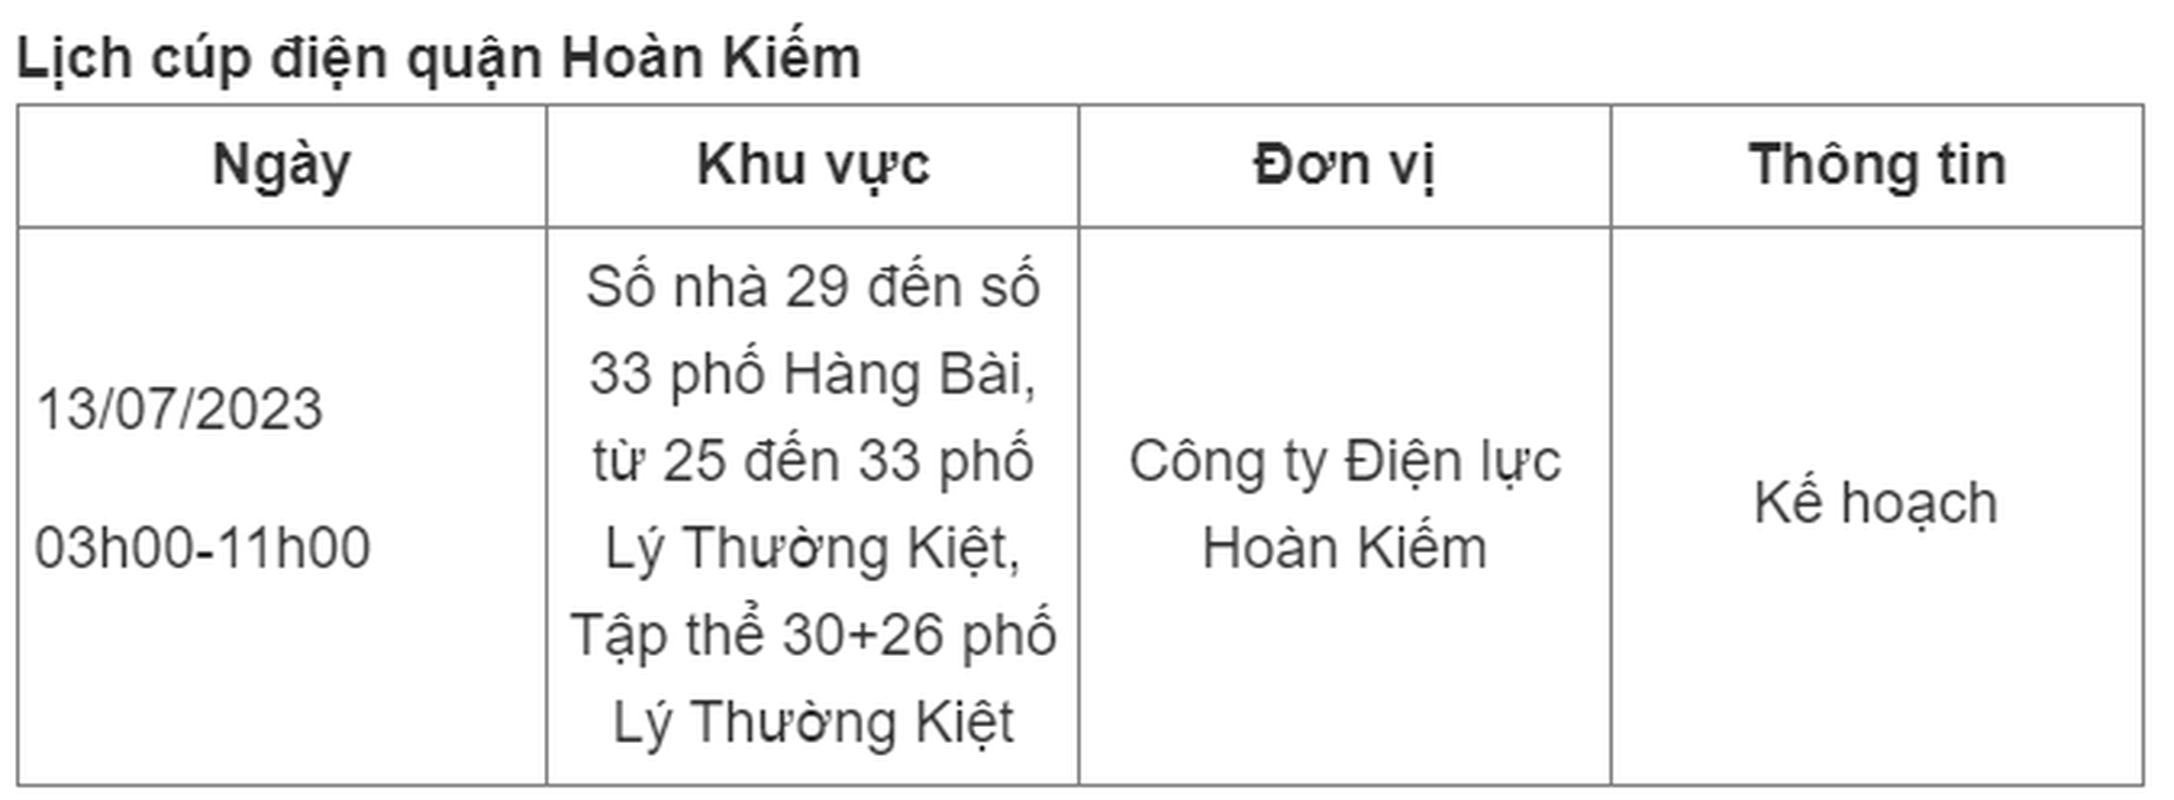 Lich cup dien Ha Noi ngay 13/7/2023: Nhieu noi mat dien tu sang toi chieu-Hinh-2